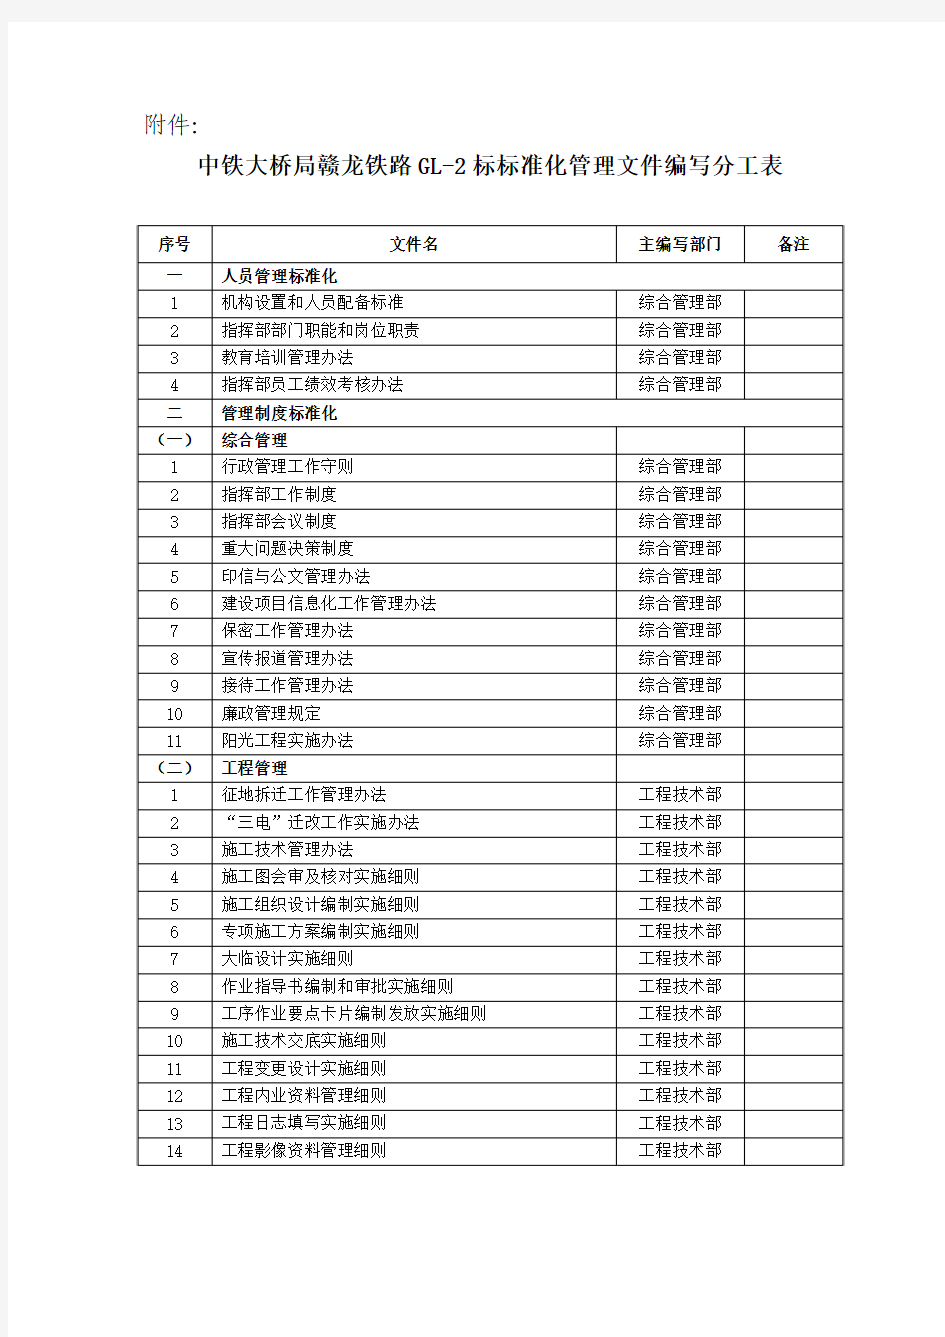 中铁大桥局赣龙铁路GL-2标标准化管理文件编写分工表